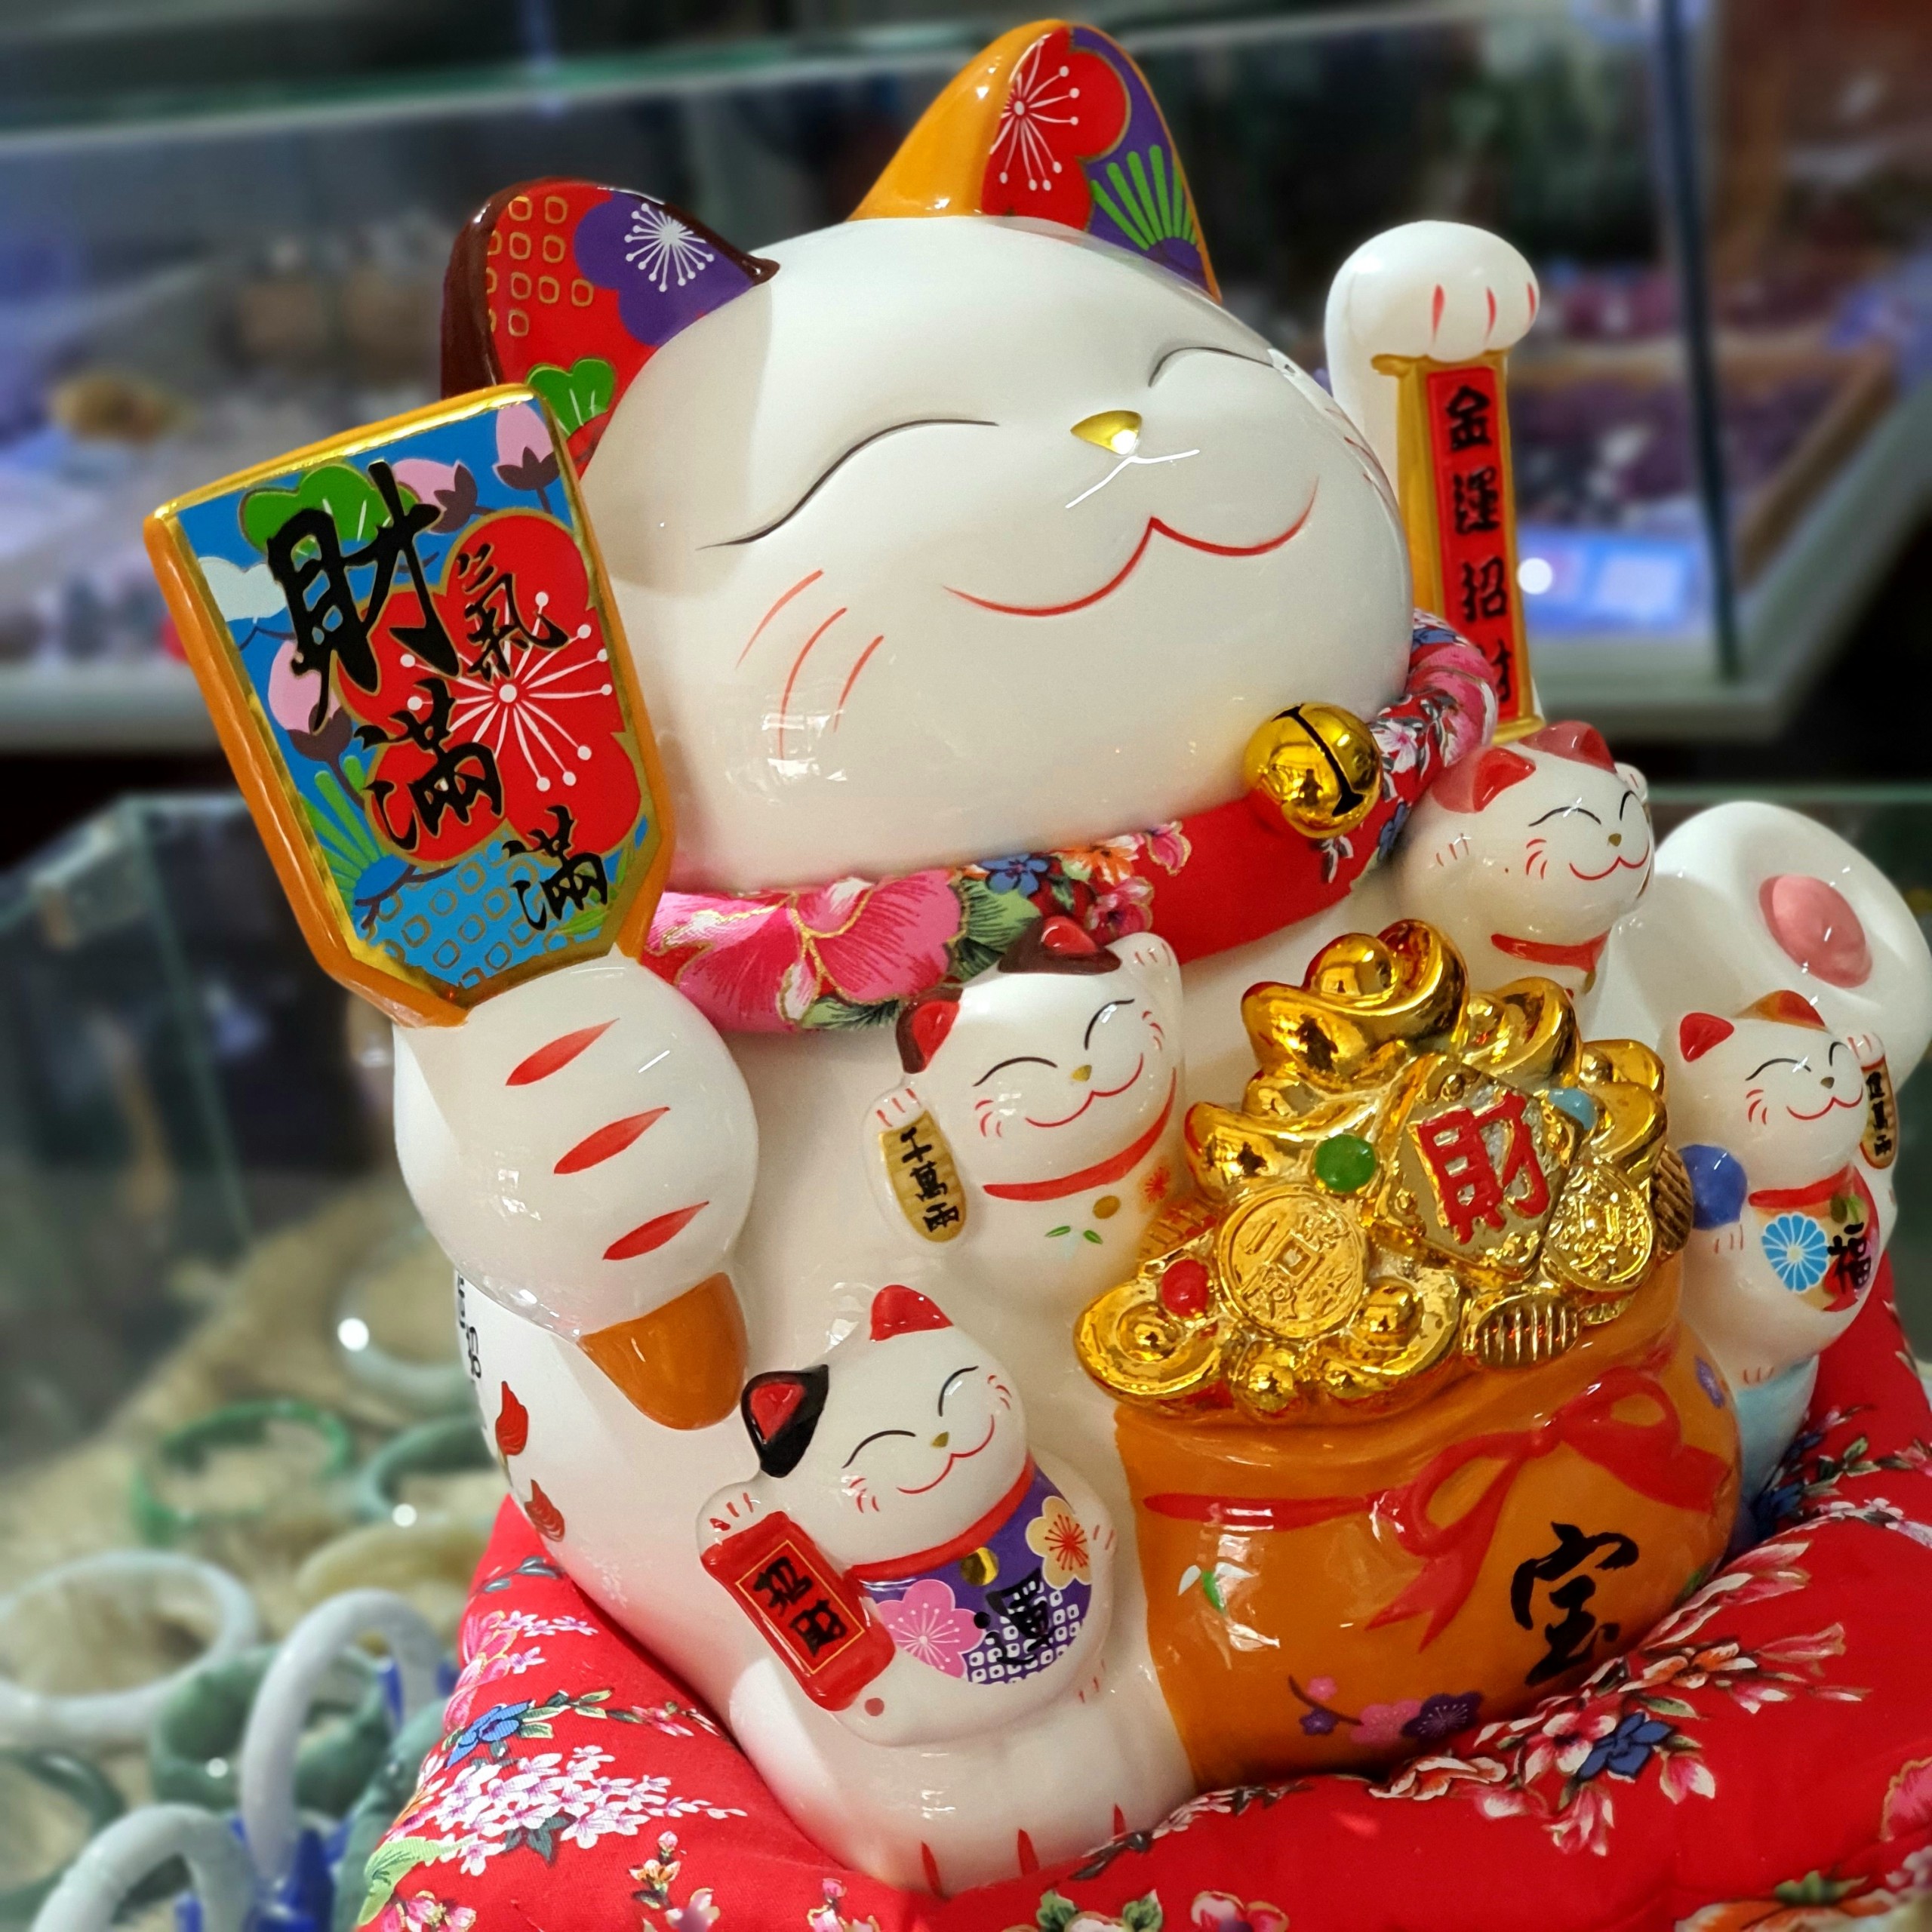 Mèo thần tài vẫy tay - Mèo Tài lộc may mắn Manekki Nekko Nhật Bản gốm sứ cao cấp ( Size Đại ) - MTT330